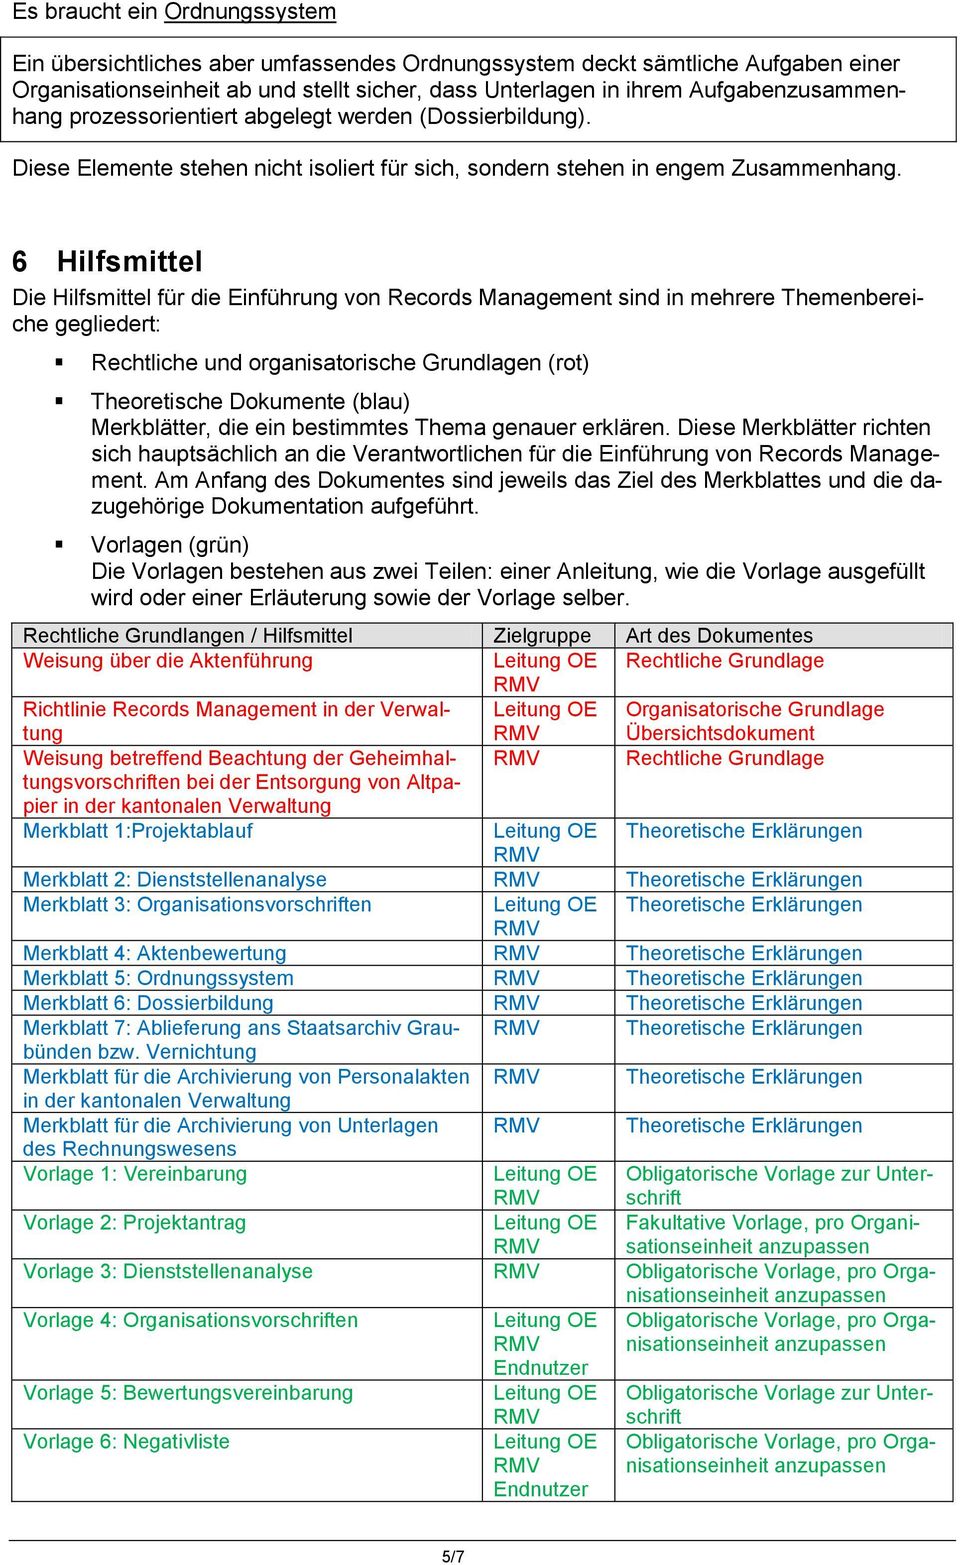 6 Hilfsmittel Die Hilfsmittel für die Einführung von Records Management sind in mehrere Themenbereiche gegliedert: Rechtliche und organisatorische Grundlagen (rot) Theoretische Dokumente (blau)